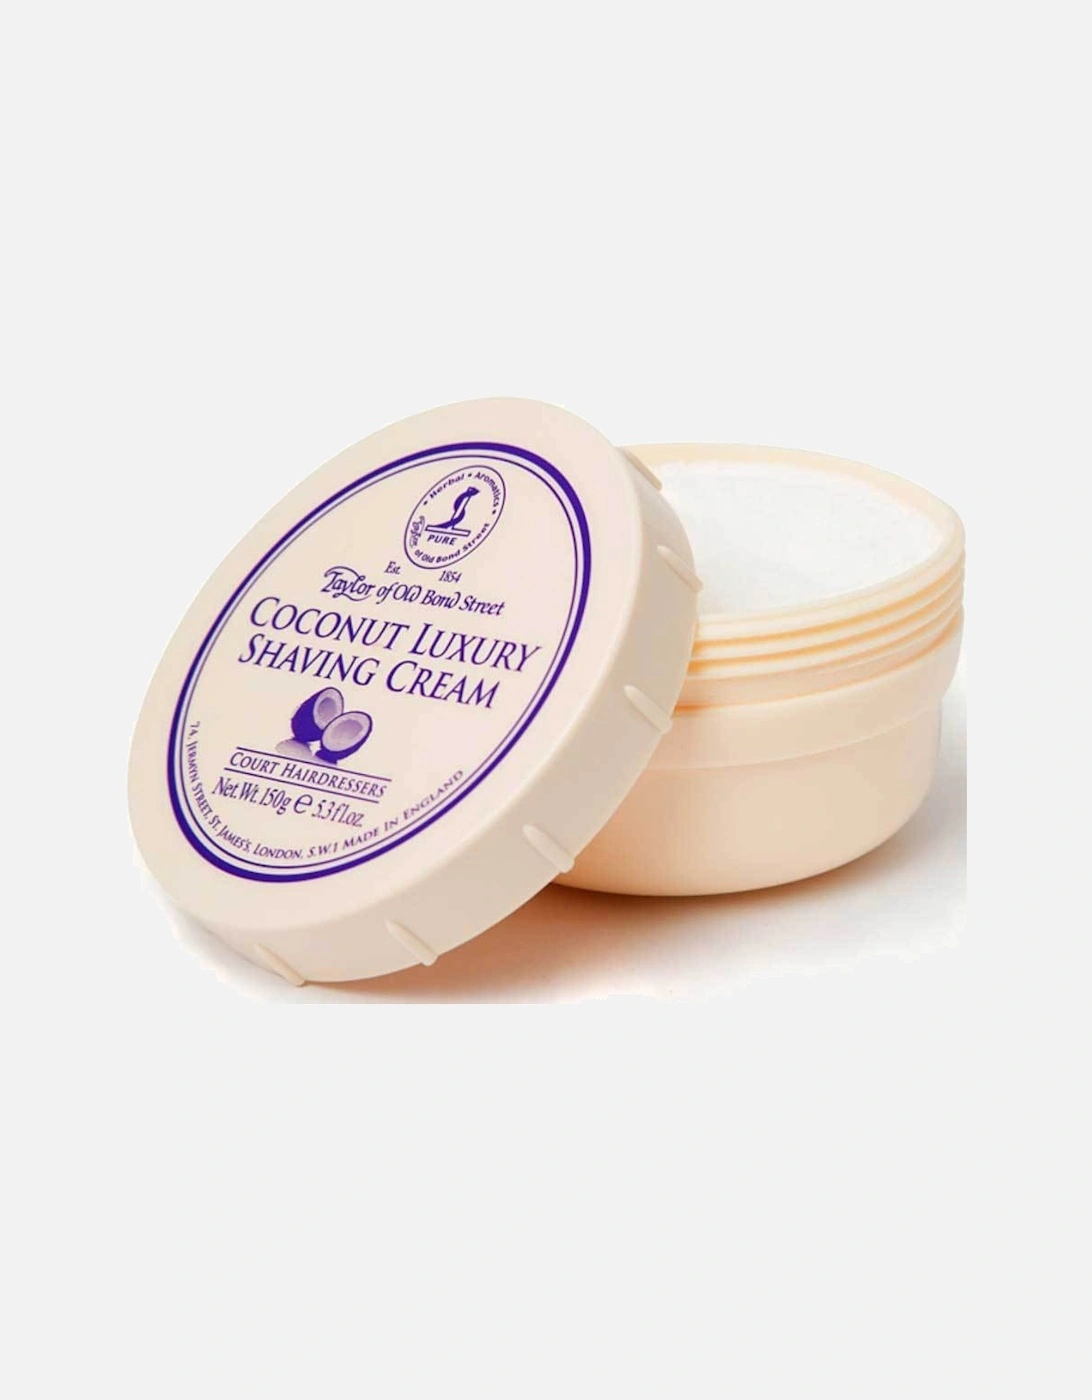 Coconut Luxury Shaving Cream Tub, 3 of 2